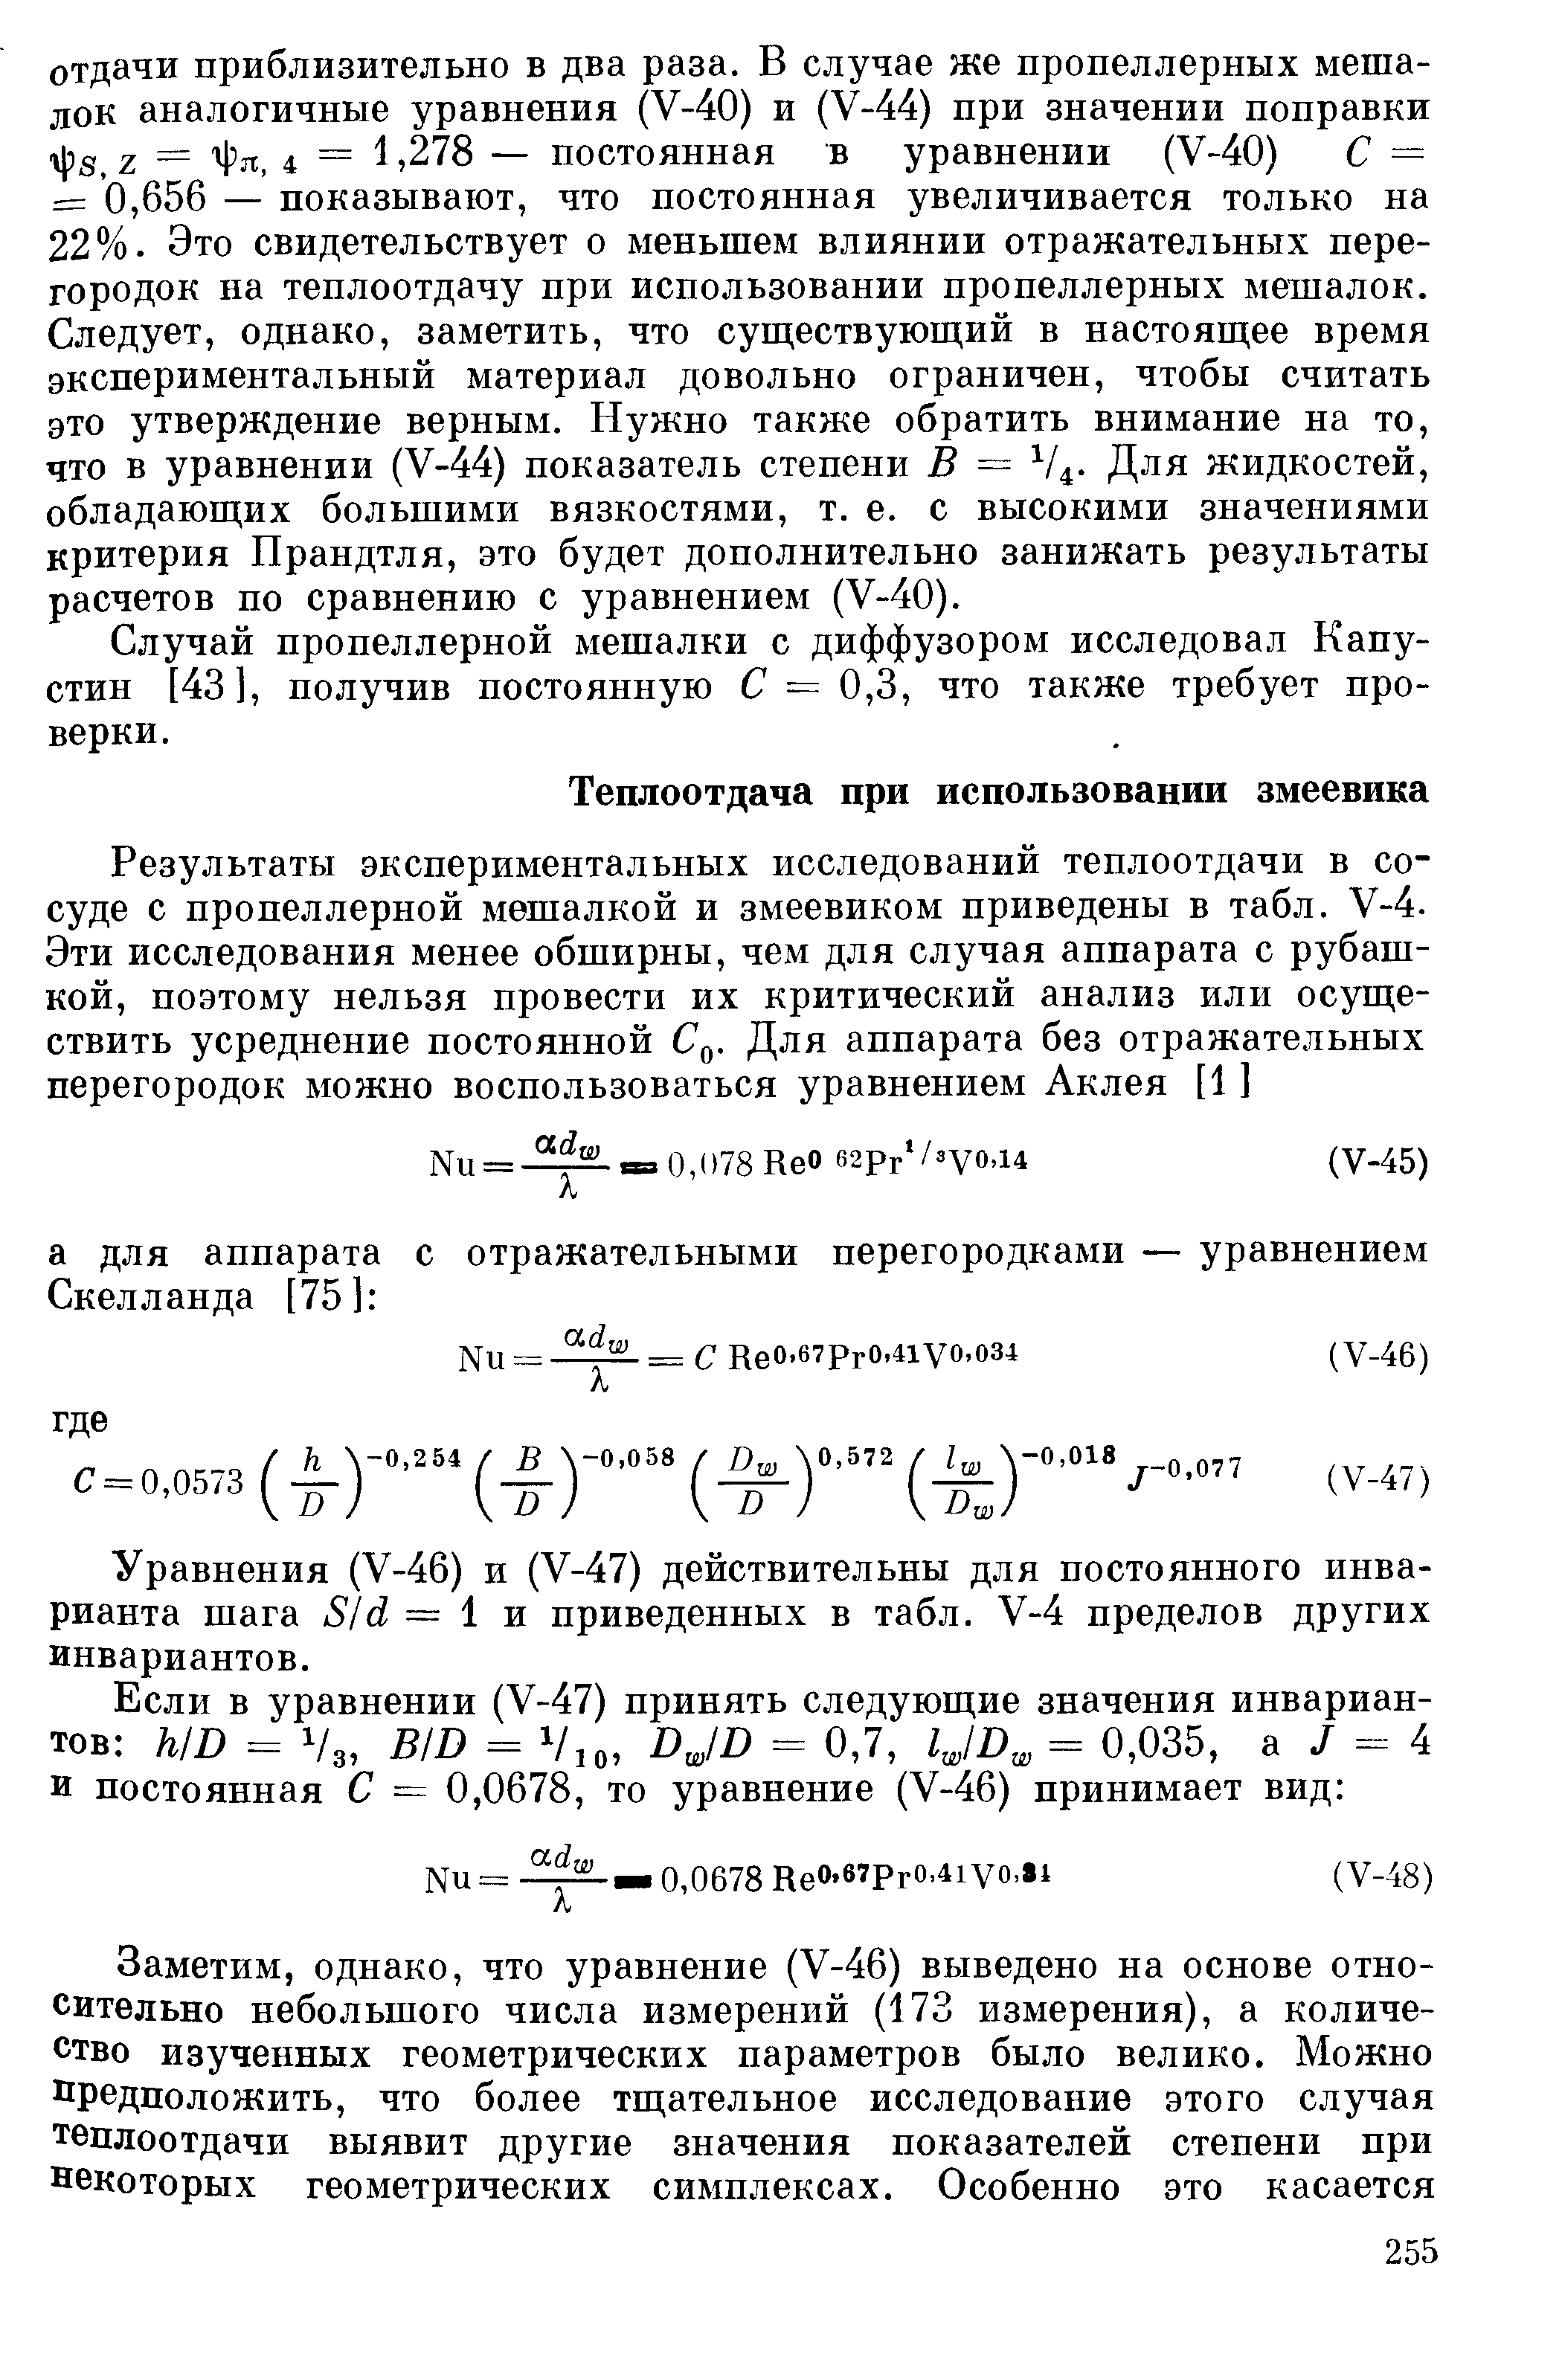 Уравнения (V-46) и (V-47) действительны для постоянного инварианта шага S d = 1 и приведенных в табл. V-4 пределов других инвариантов.